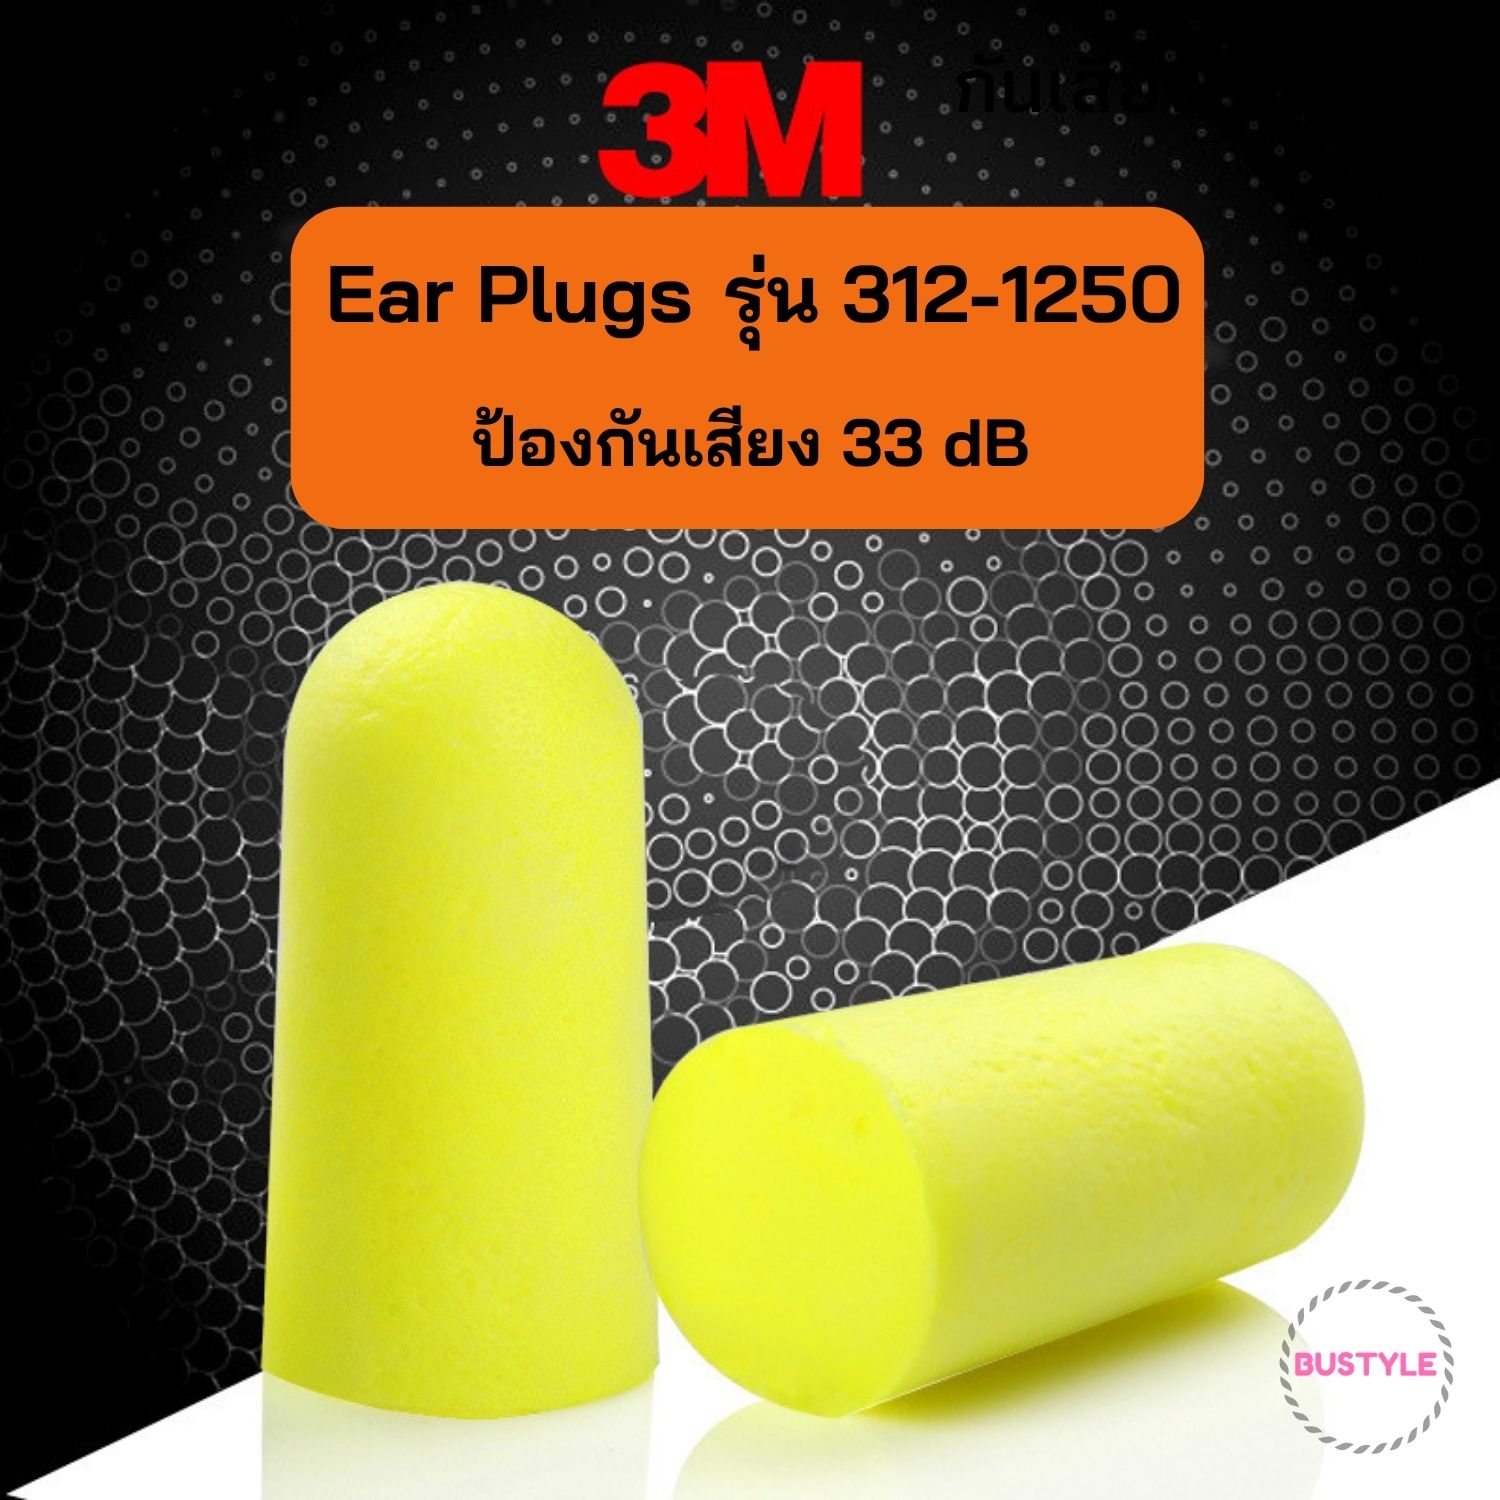 ⚡ สั่งขั้นต่ำ 3 ชิ้น Earplug 3M 312-1250 ที่อุดหูกันเสียงรบกวน ที่อุดหู โฟมอุดหู เอียปลั๊ก ป้องกันเสียงรบกวน AS331